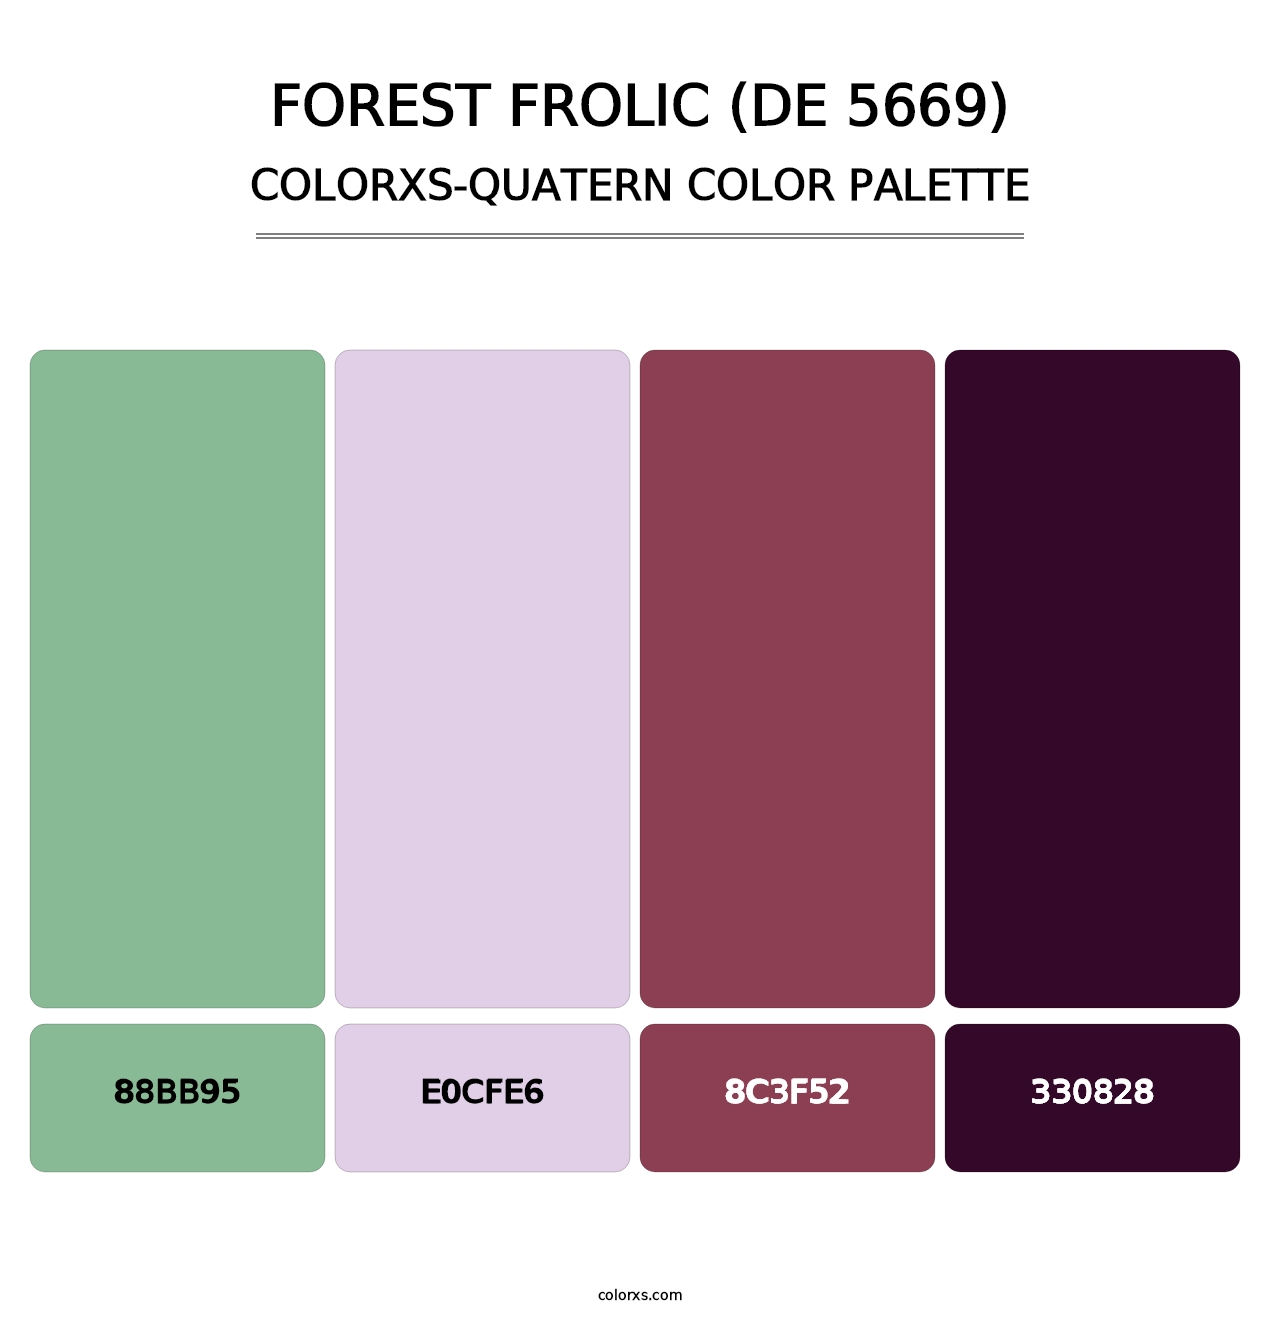 Forest Frolic (DE 5669) - Colorxs Quatern Palette